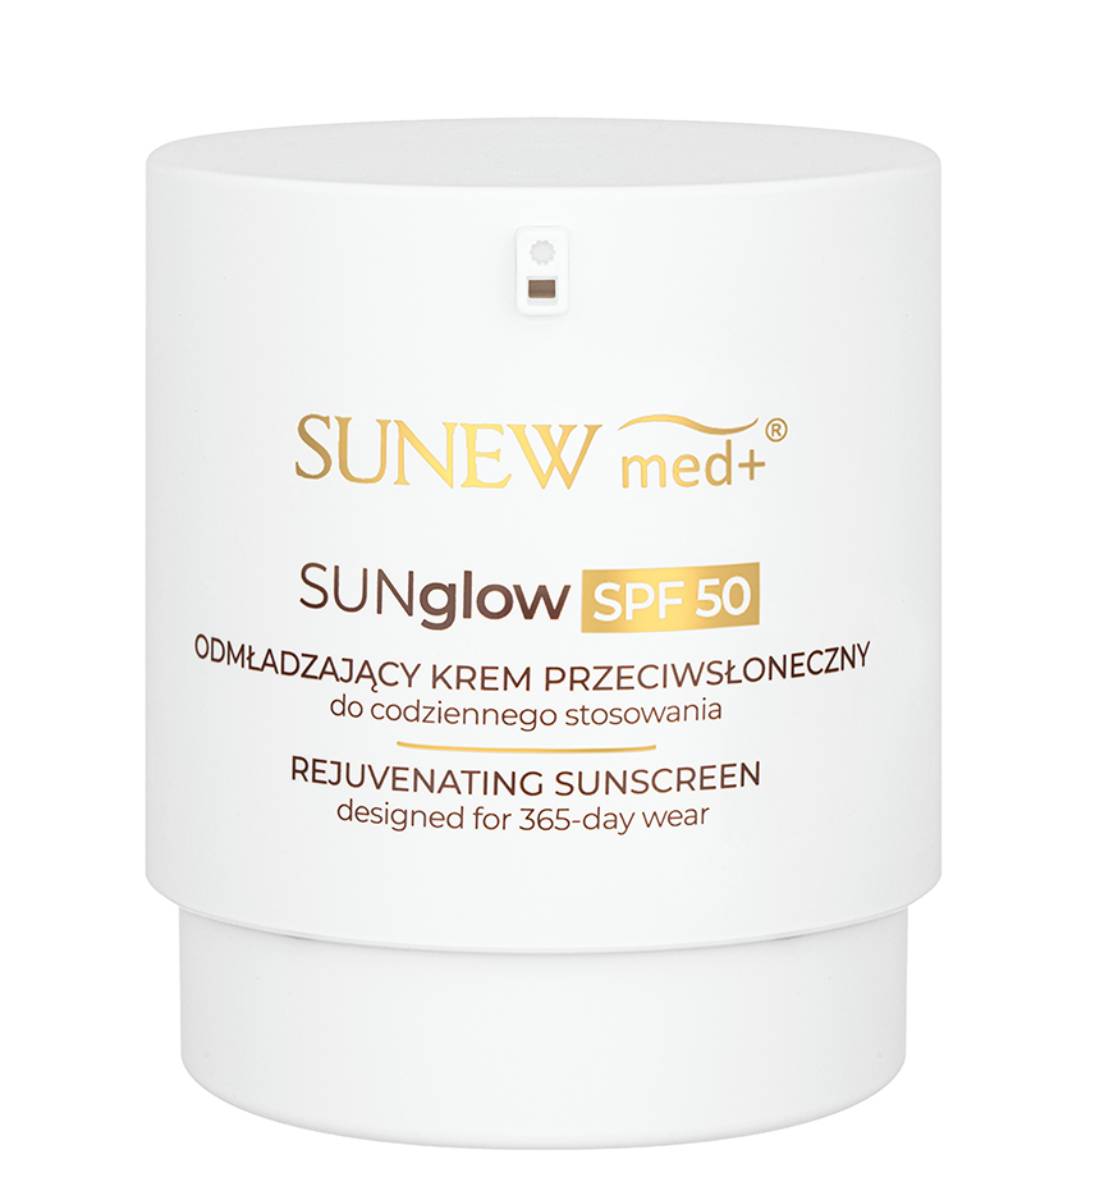 SunewMed+ Sunglow Krem przeciwsłoneczny do codziennego stosowania SPF50 80ml